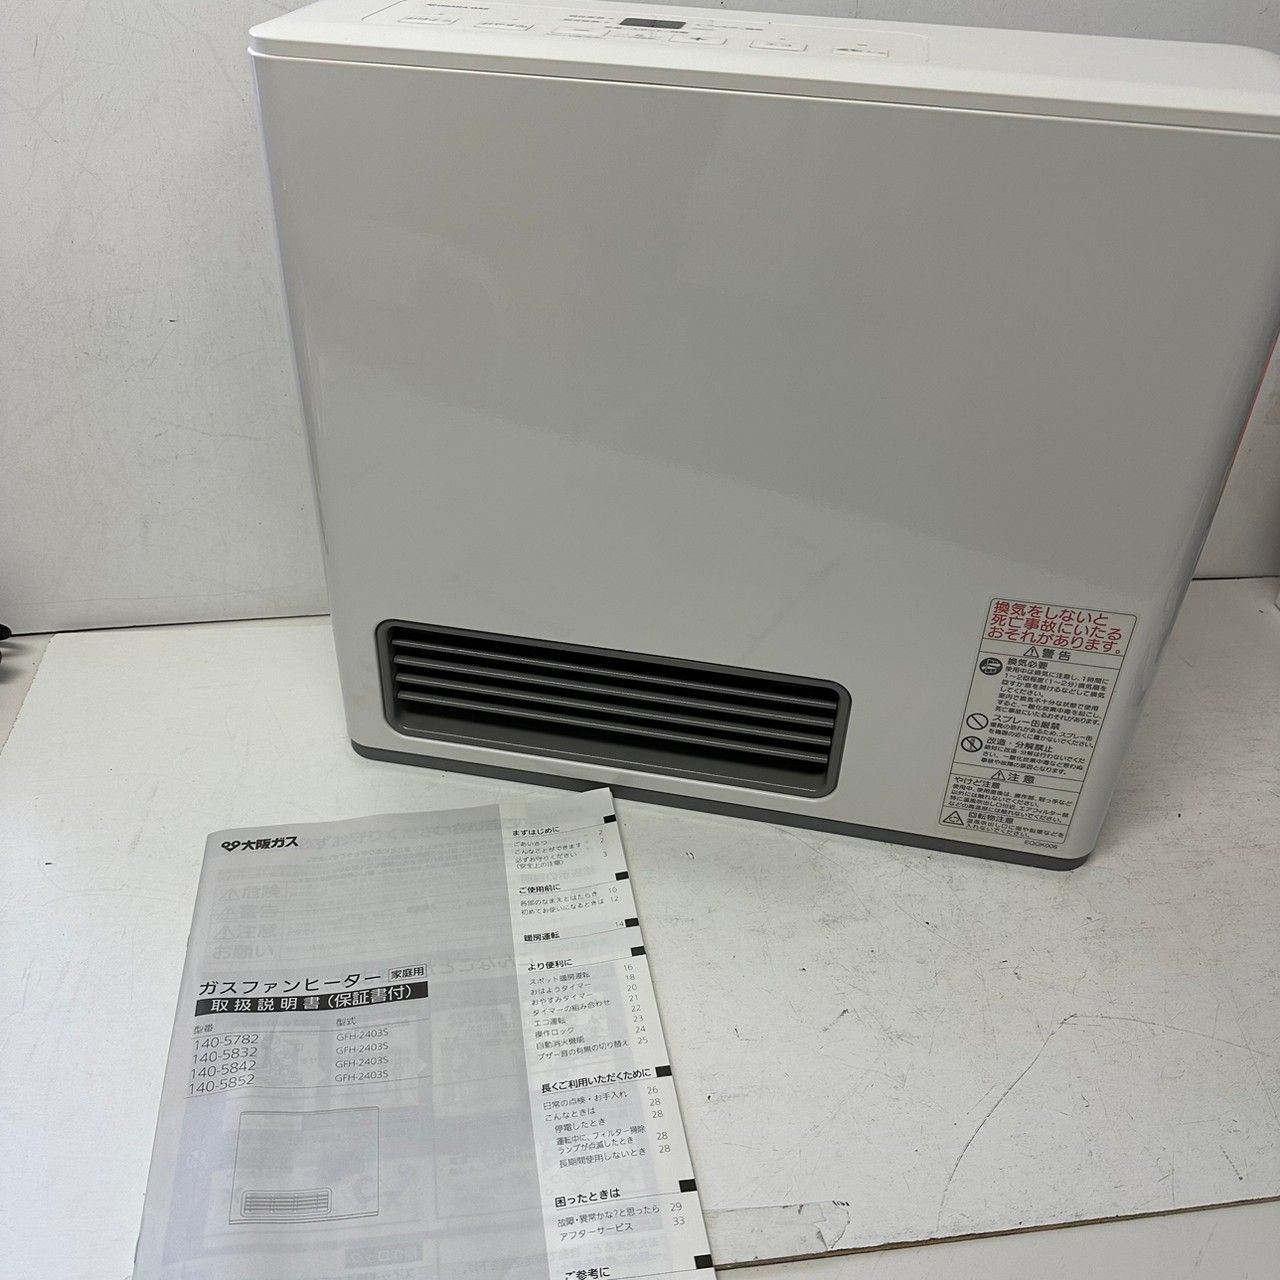 新品特価【新品未開封】大阪ガス ガスファンヒーター N140-5882 ファンヒーター